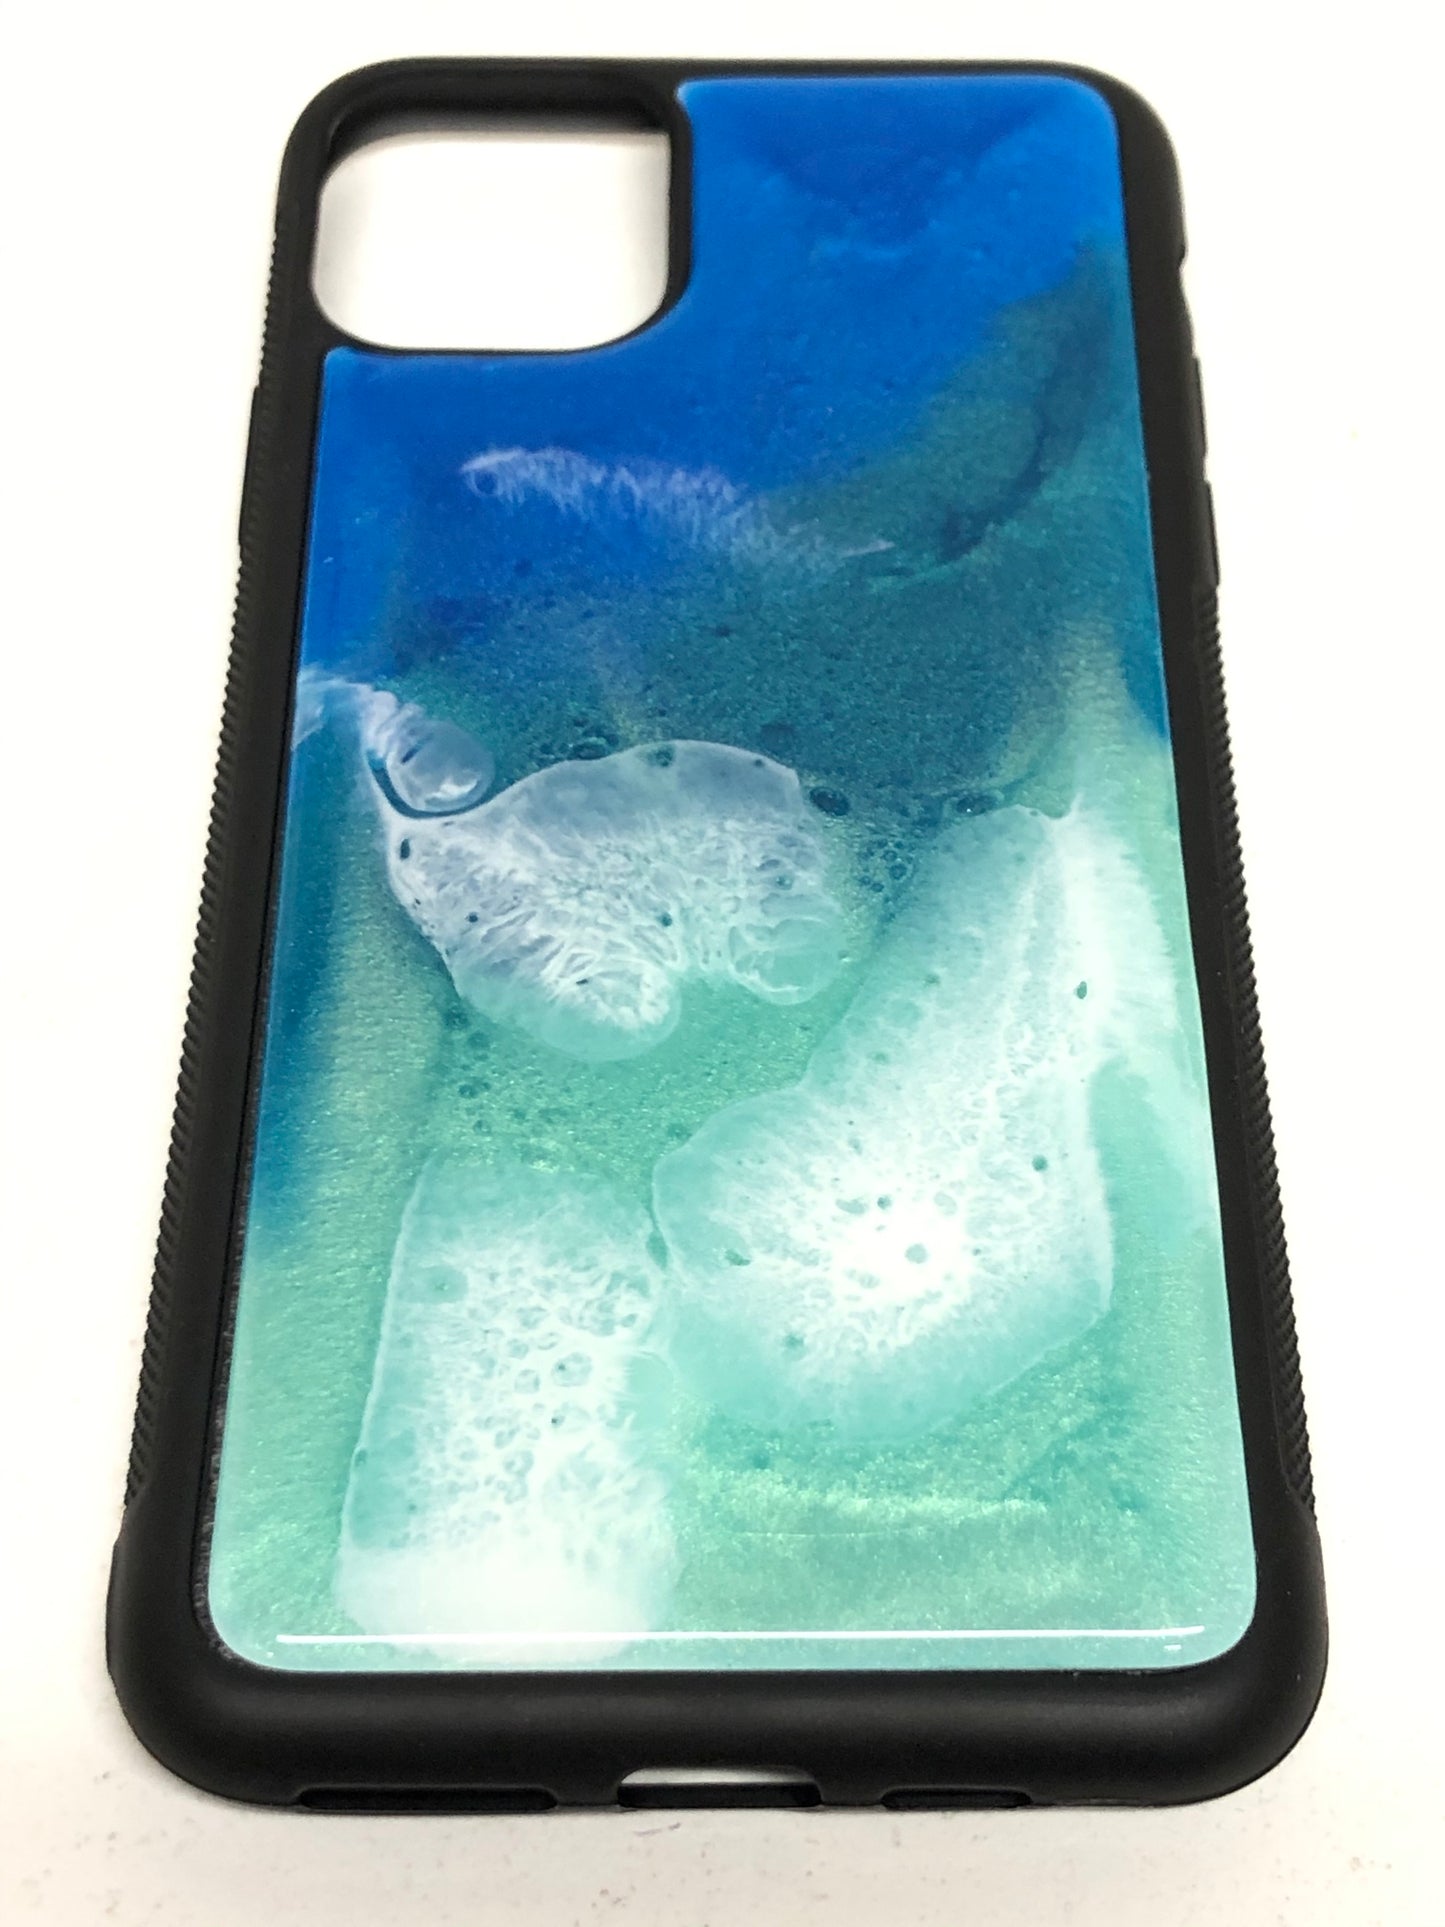 iPhone 11 Pro Max Phone Case - "Ocean" Resin #2